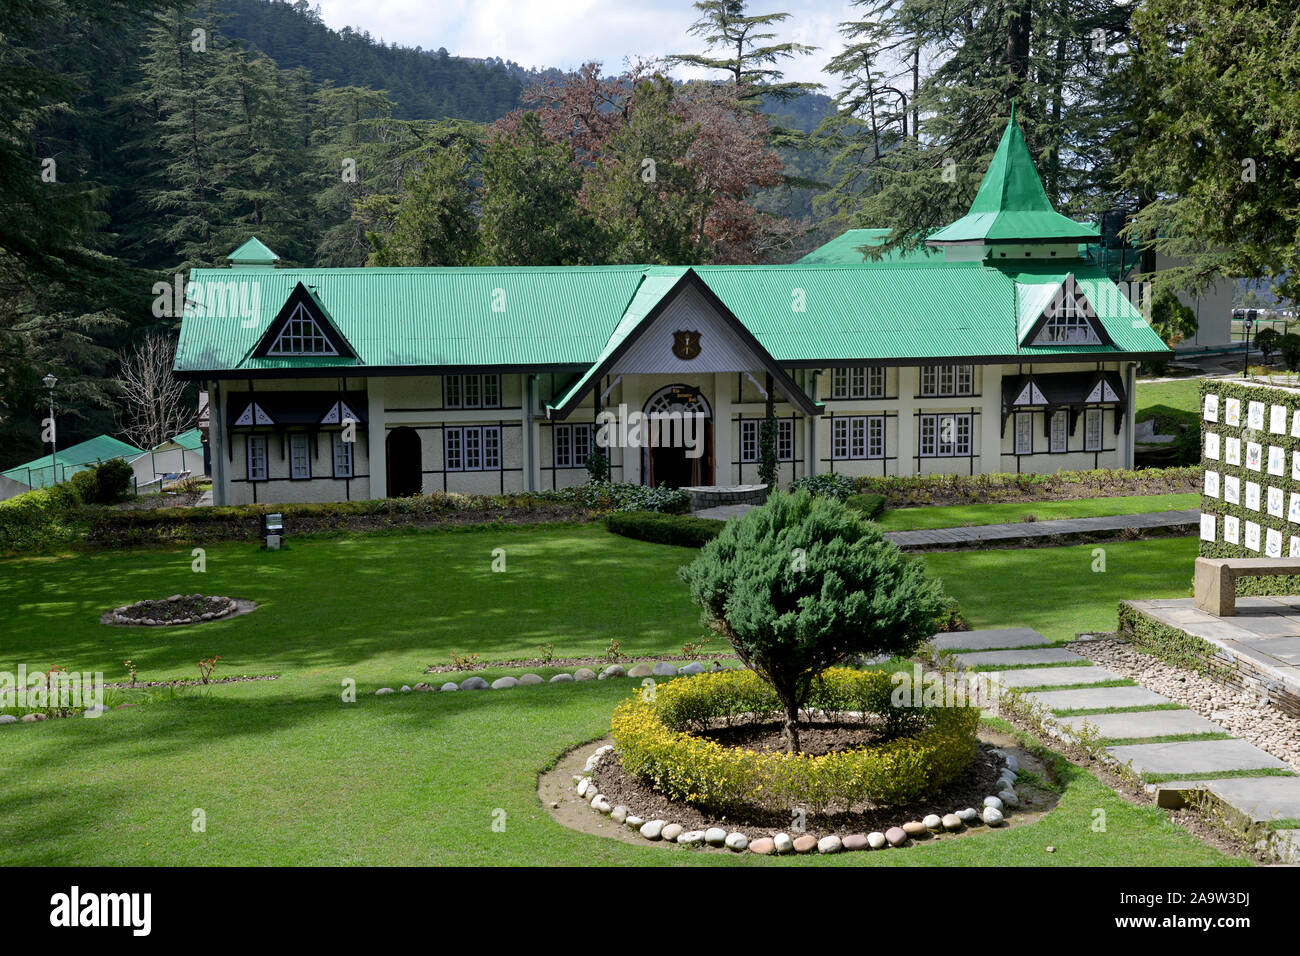 El Museo del Patrimonio del ejército fue creada por el comando de entrenamiento del ejército en mayo de 2006 en Annandale, Shimla para conmemorar Himachal es larga asociación con el ejército. La historia de Annadale está asociada con la regla británica como de ser un anodino village, bajo el virrey, John Lawrence, Shimla fue declarada oficialmente como la capital de verano de 1864 del Imperio Británico, un estado retenida hasta la independencia de la India. Shimla es la capital del estado indio de Himachal Pradesh, situado en el norte de la India, a una altura de 7.200 pies. Foto de stock